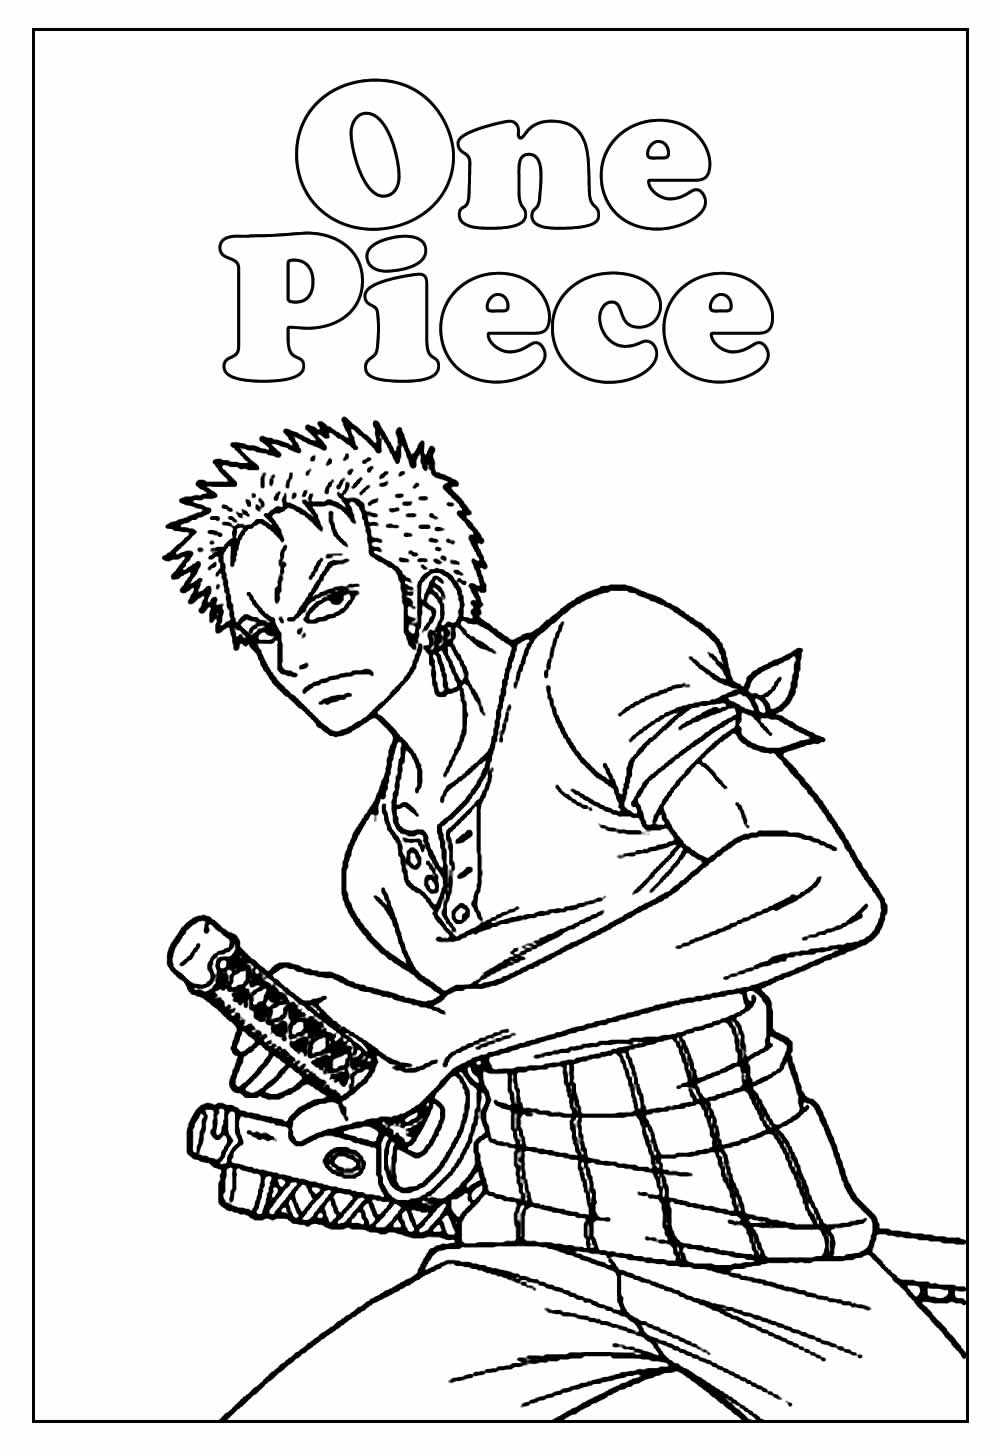 Desenho Educativo de One Piece para colorir